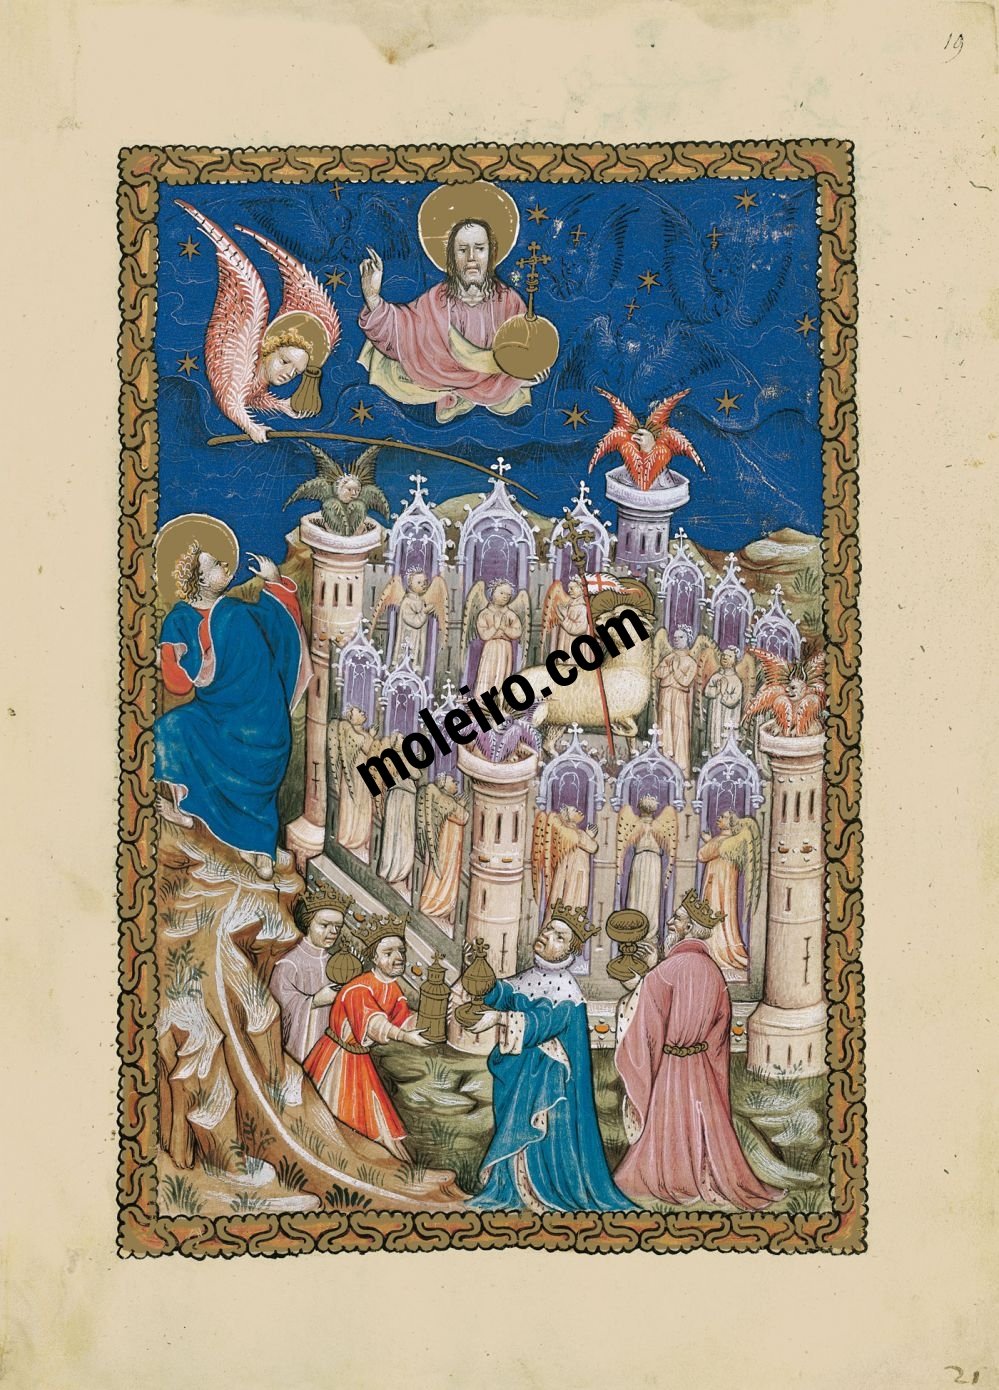 Flemish Apocalypse f. 19r, The New Jerusalem